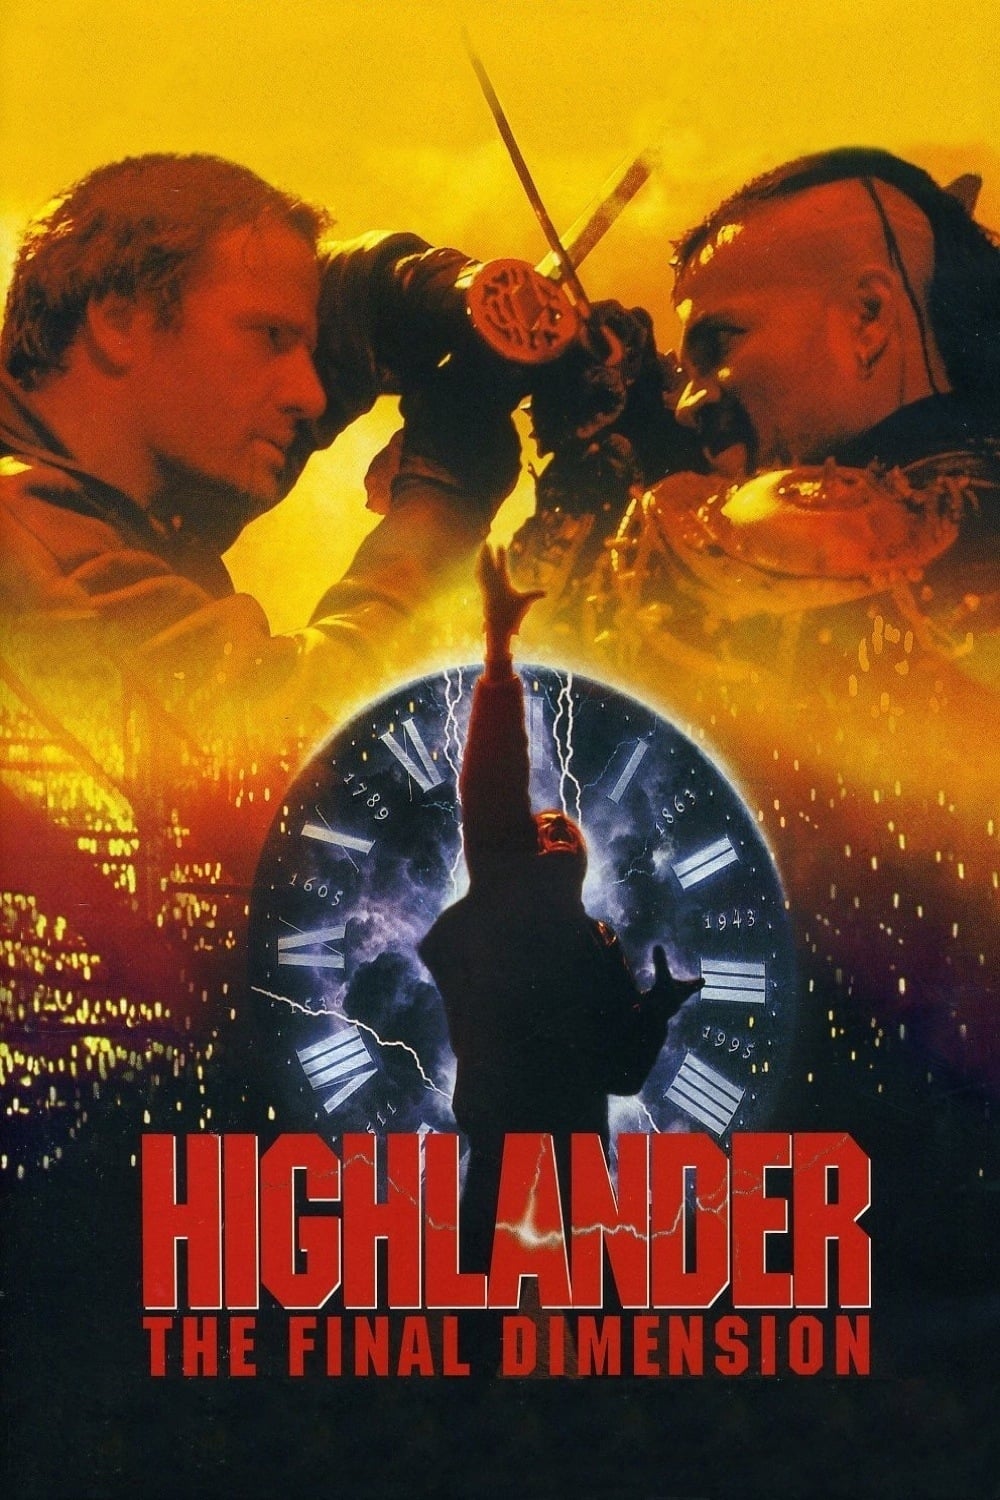 Highlander III: The Sorcerer (1994)